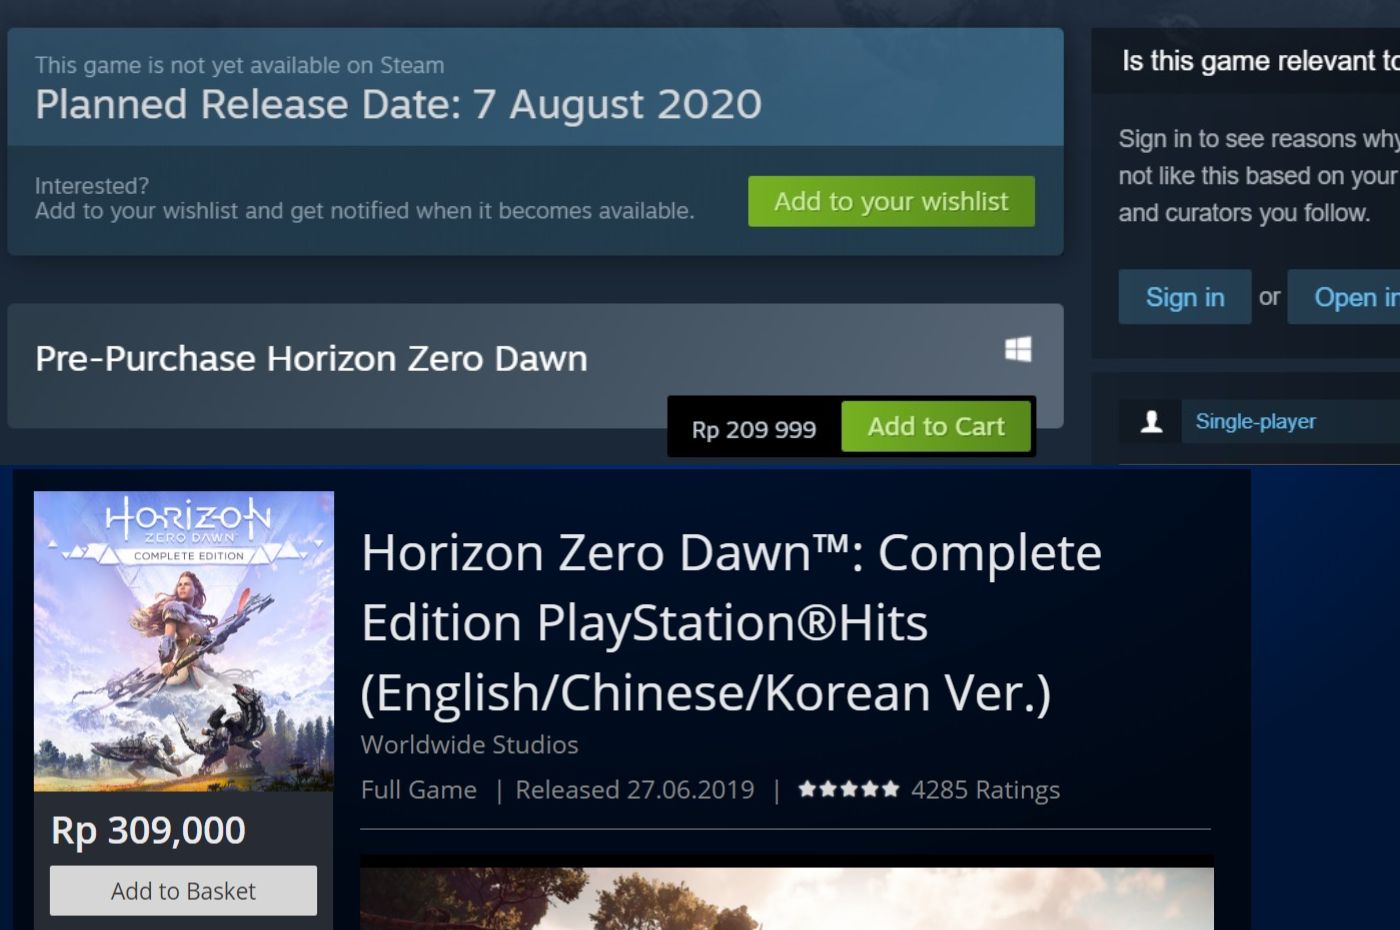 Perbedaan harga Horizon Zero Dawn di PC (Steam) dan Playstation Store.